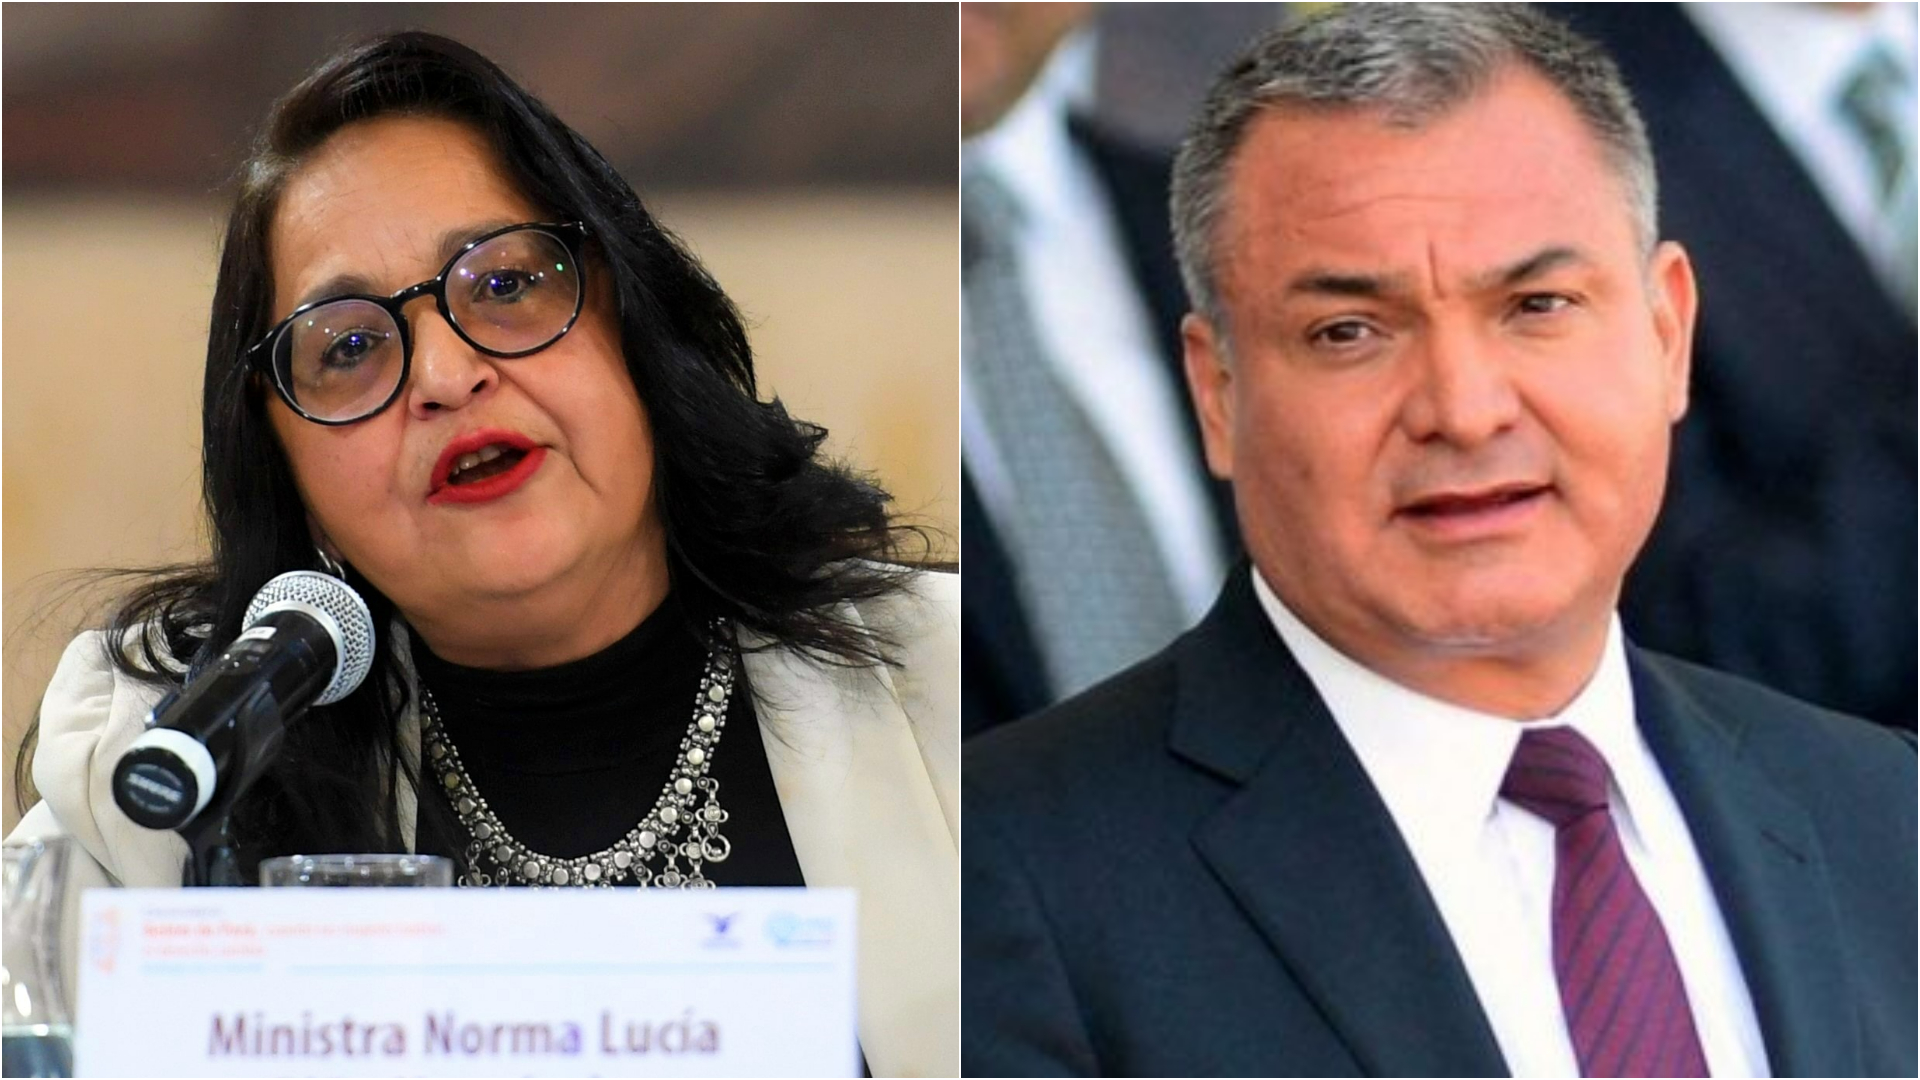 Cómo está ligada la ministra Norma Lucía Piña con García Luna, según Jenaro Villamil